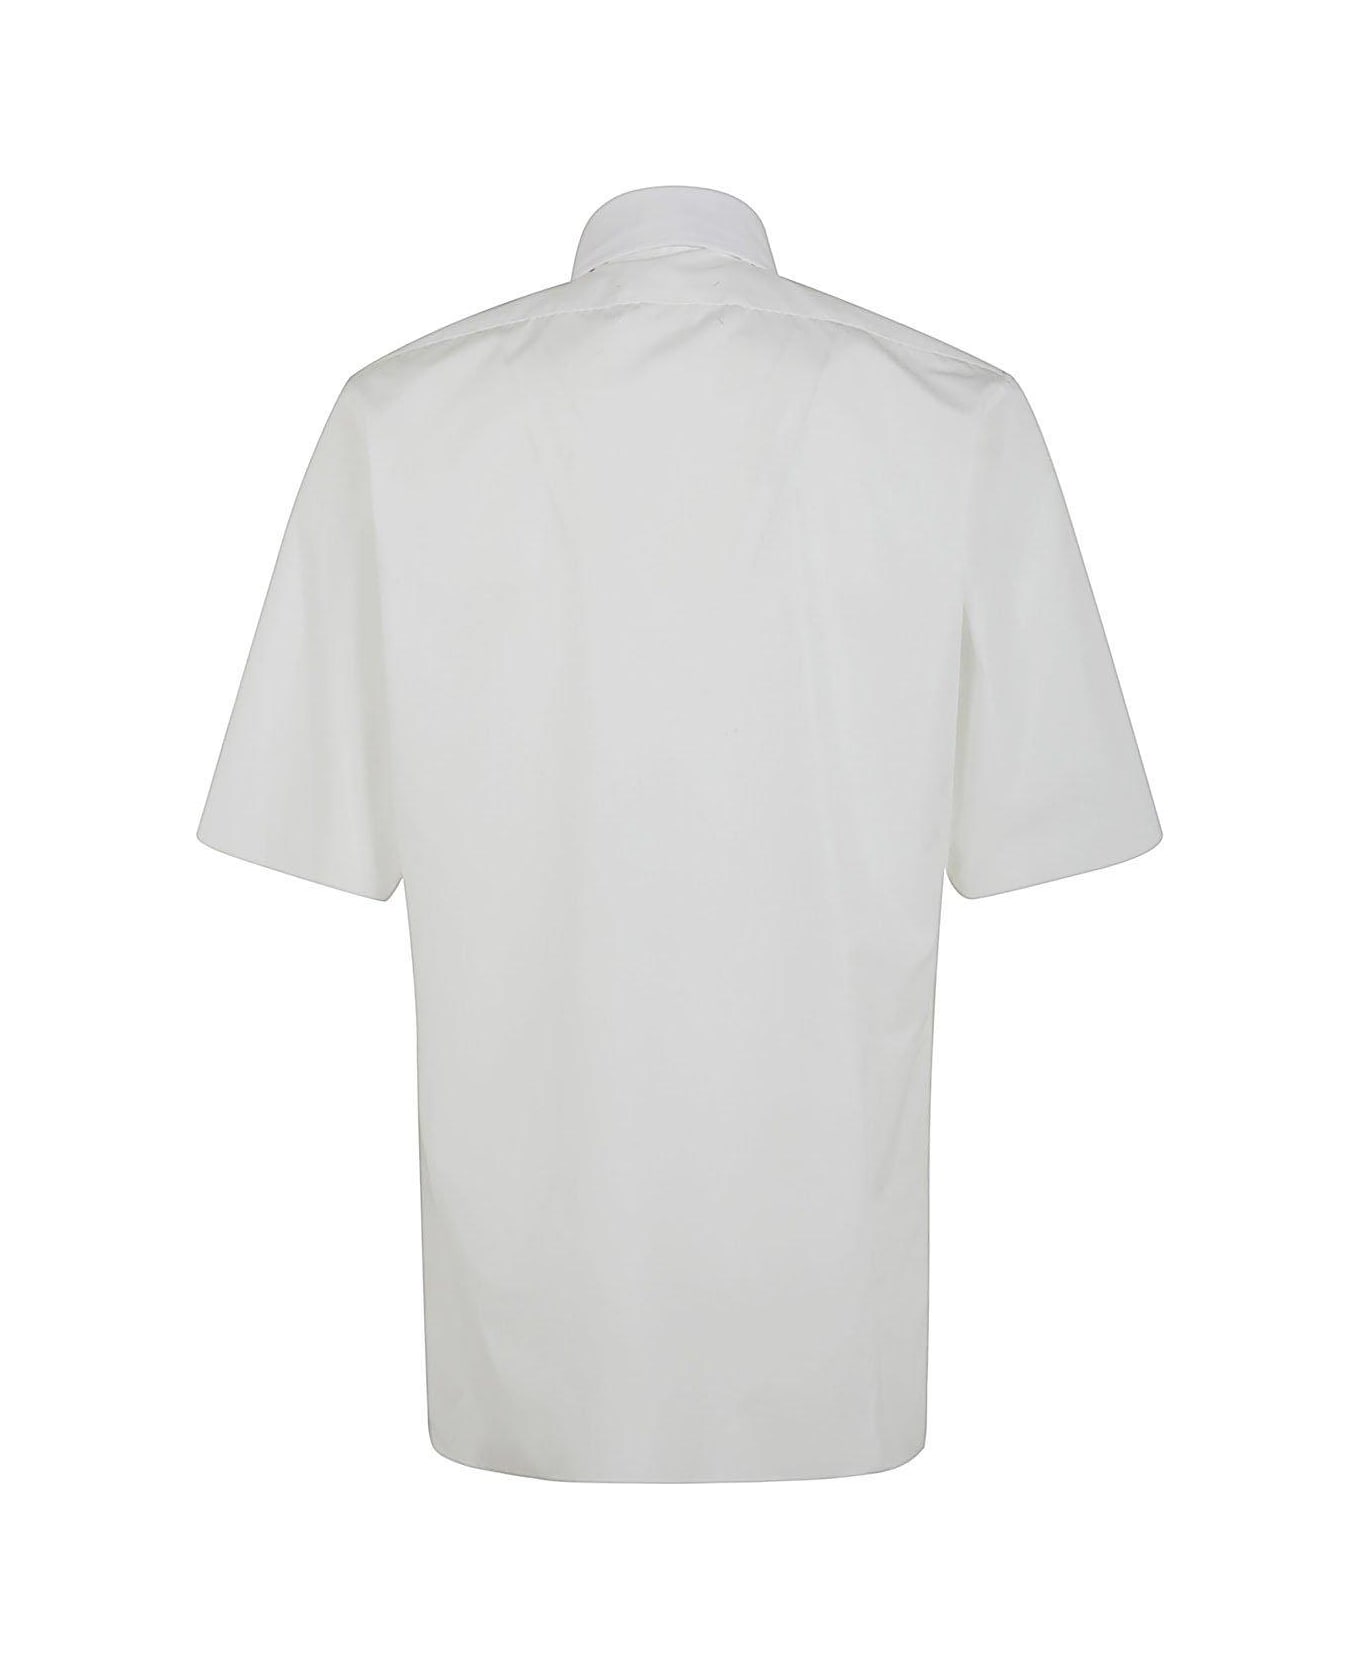 Maison Margiela Short-sleeved Shirt - White シャツ